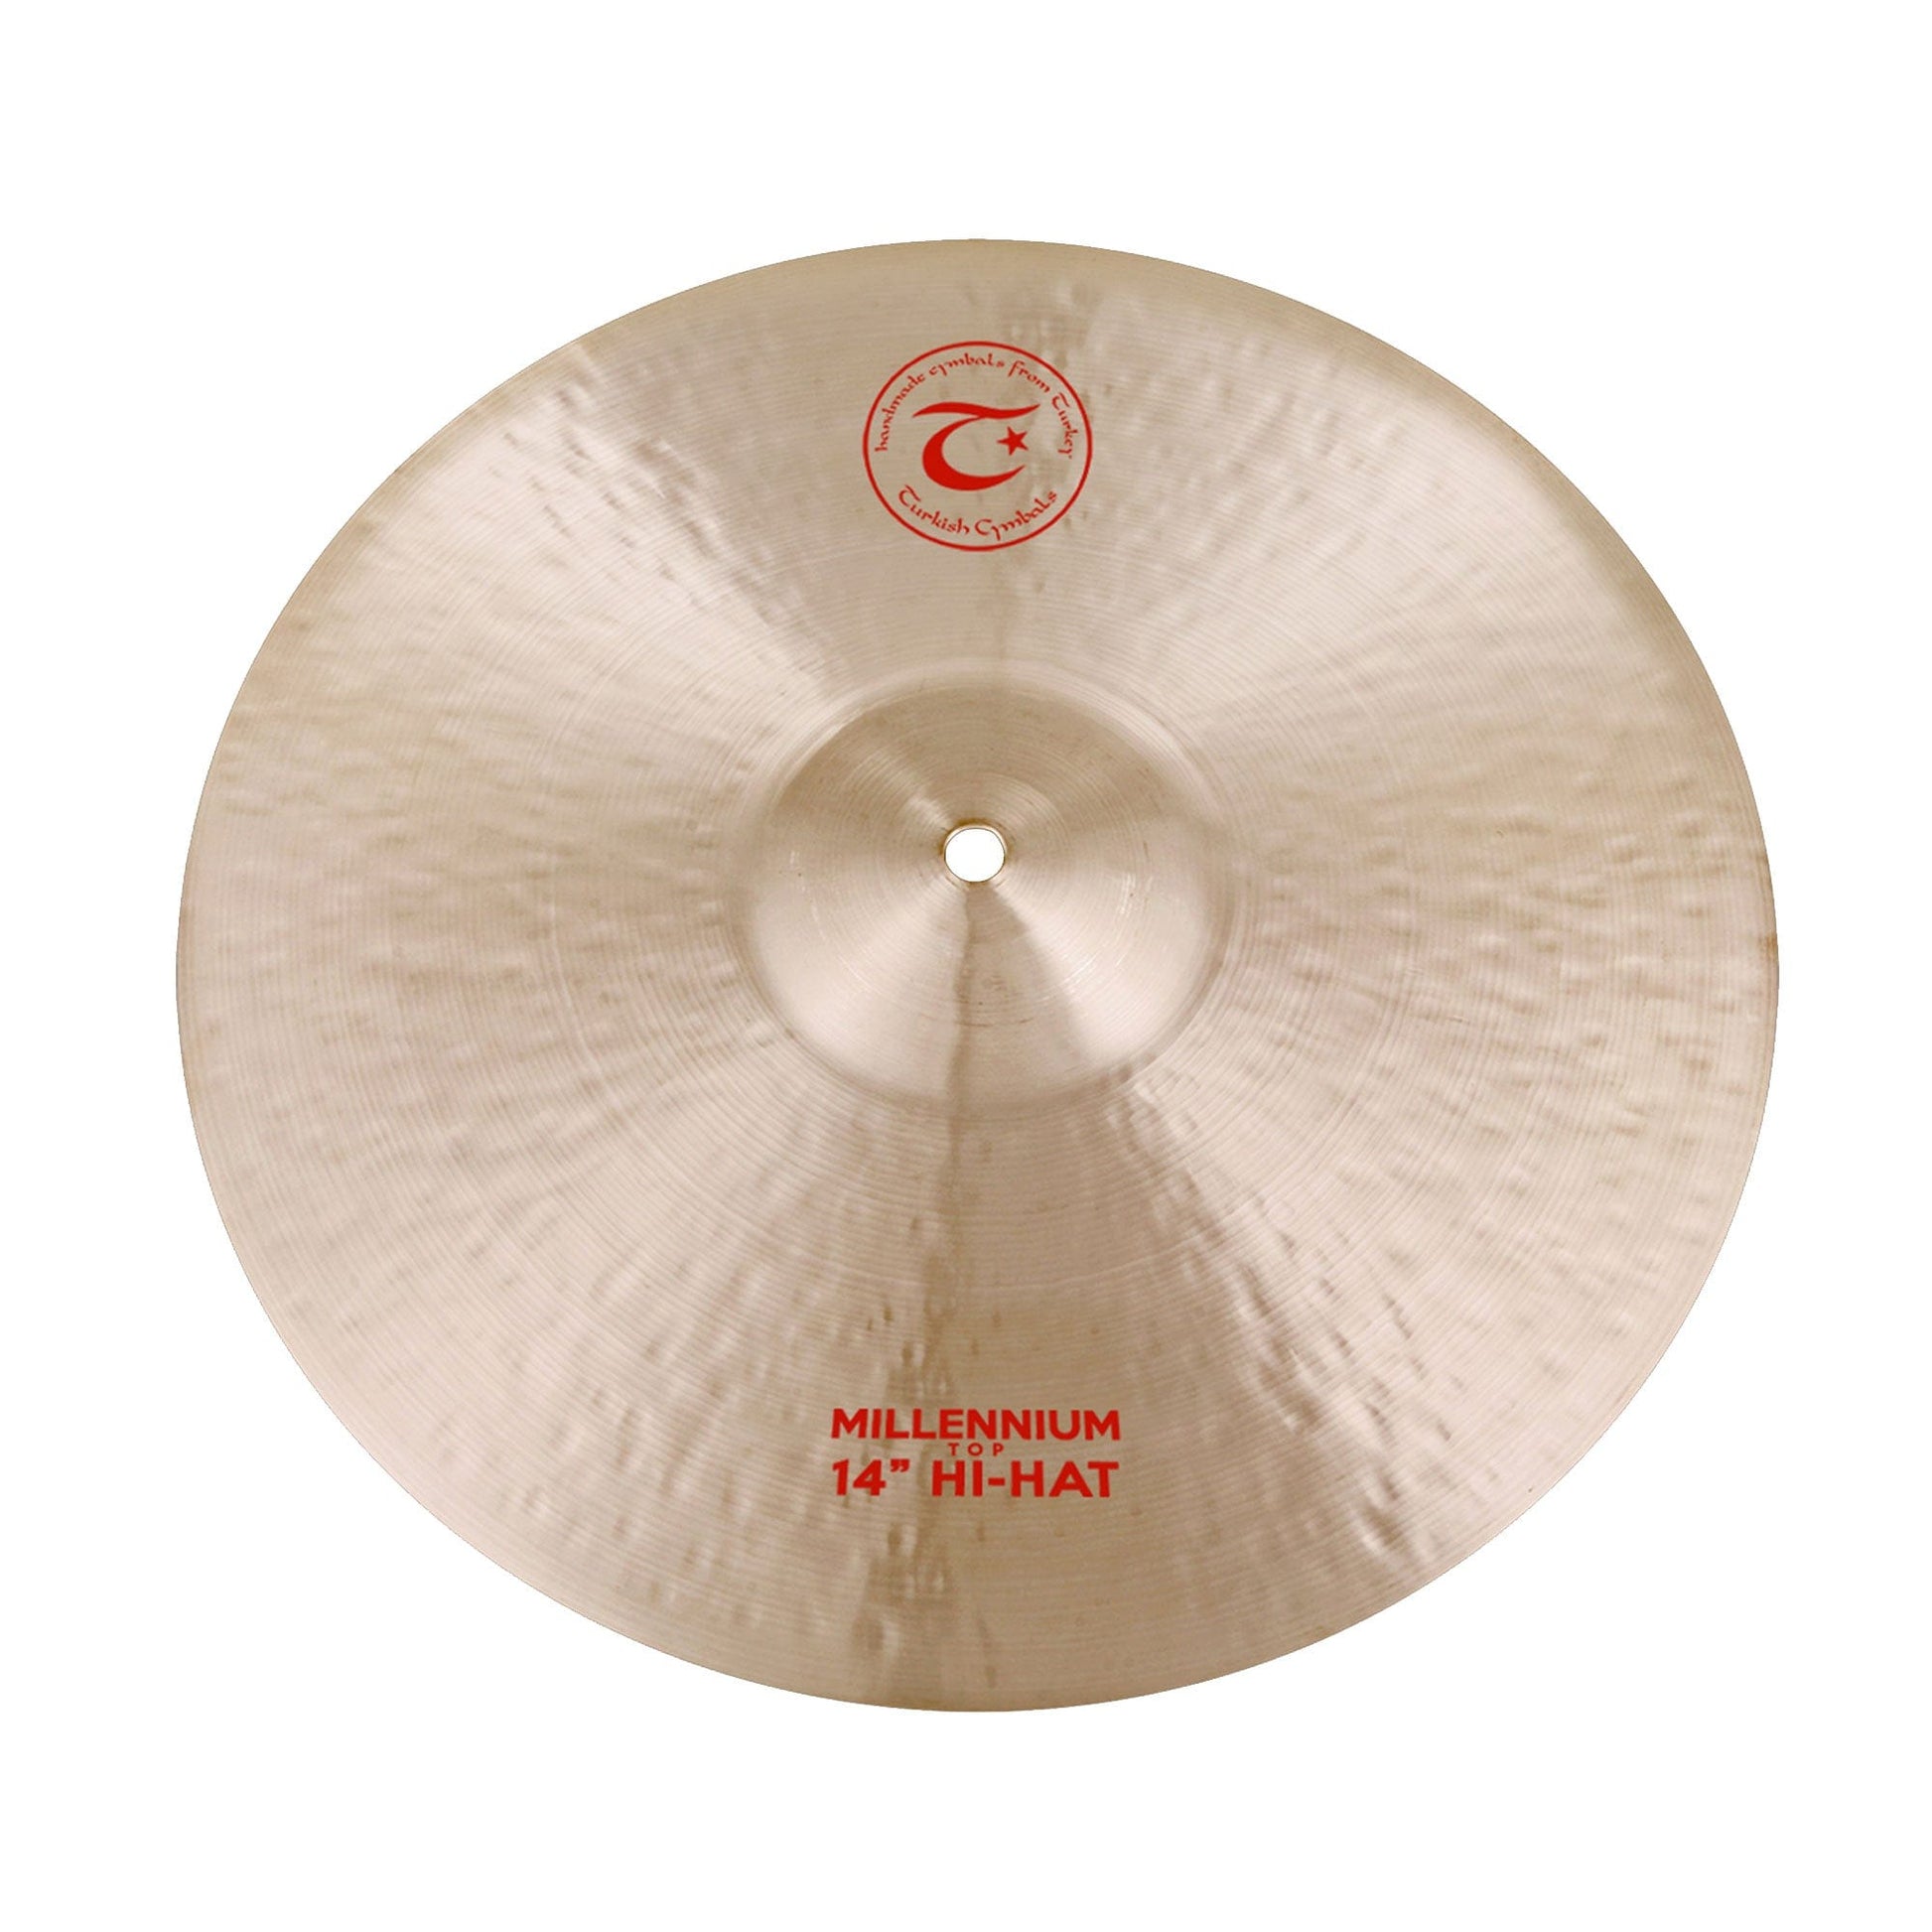 Turkish 14" Millennium Hi-Hat Pair Drums and Percussion / Cymbals / Hi-Hats